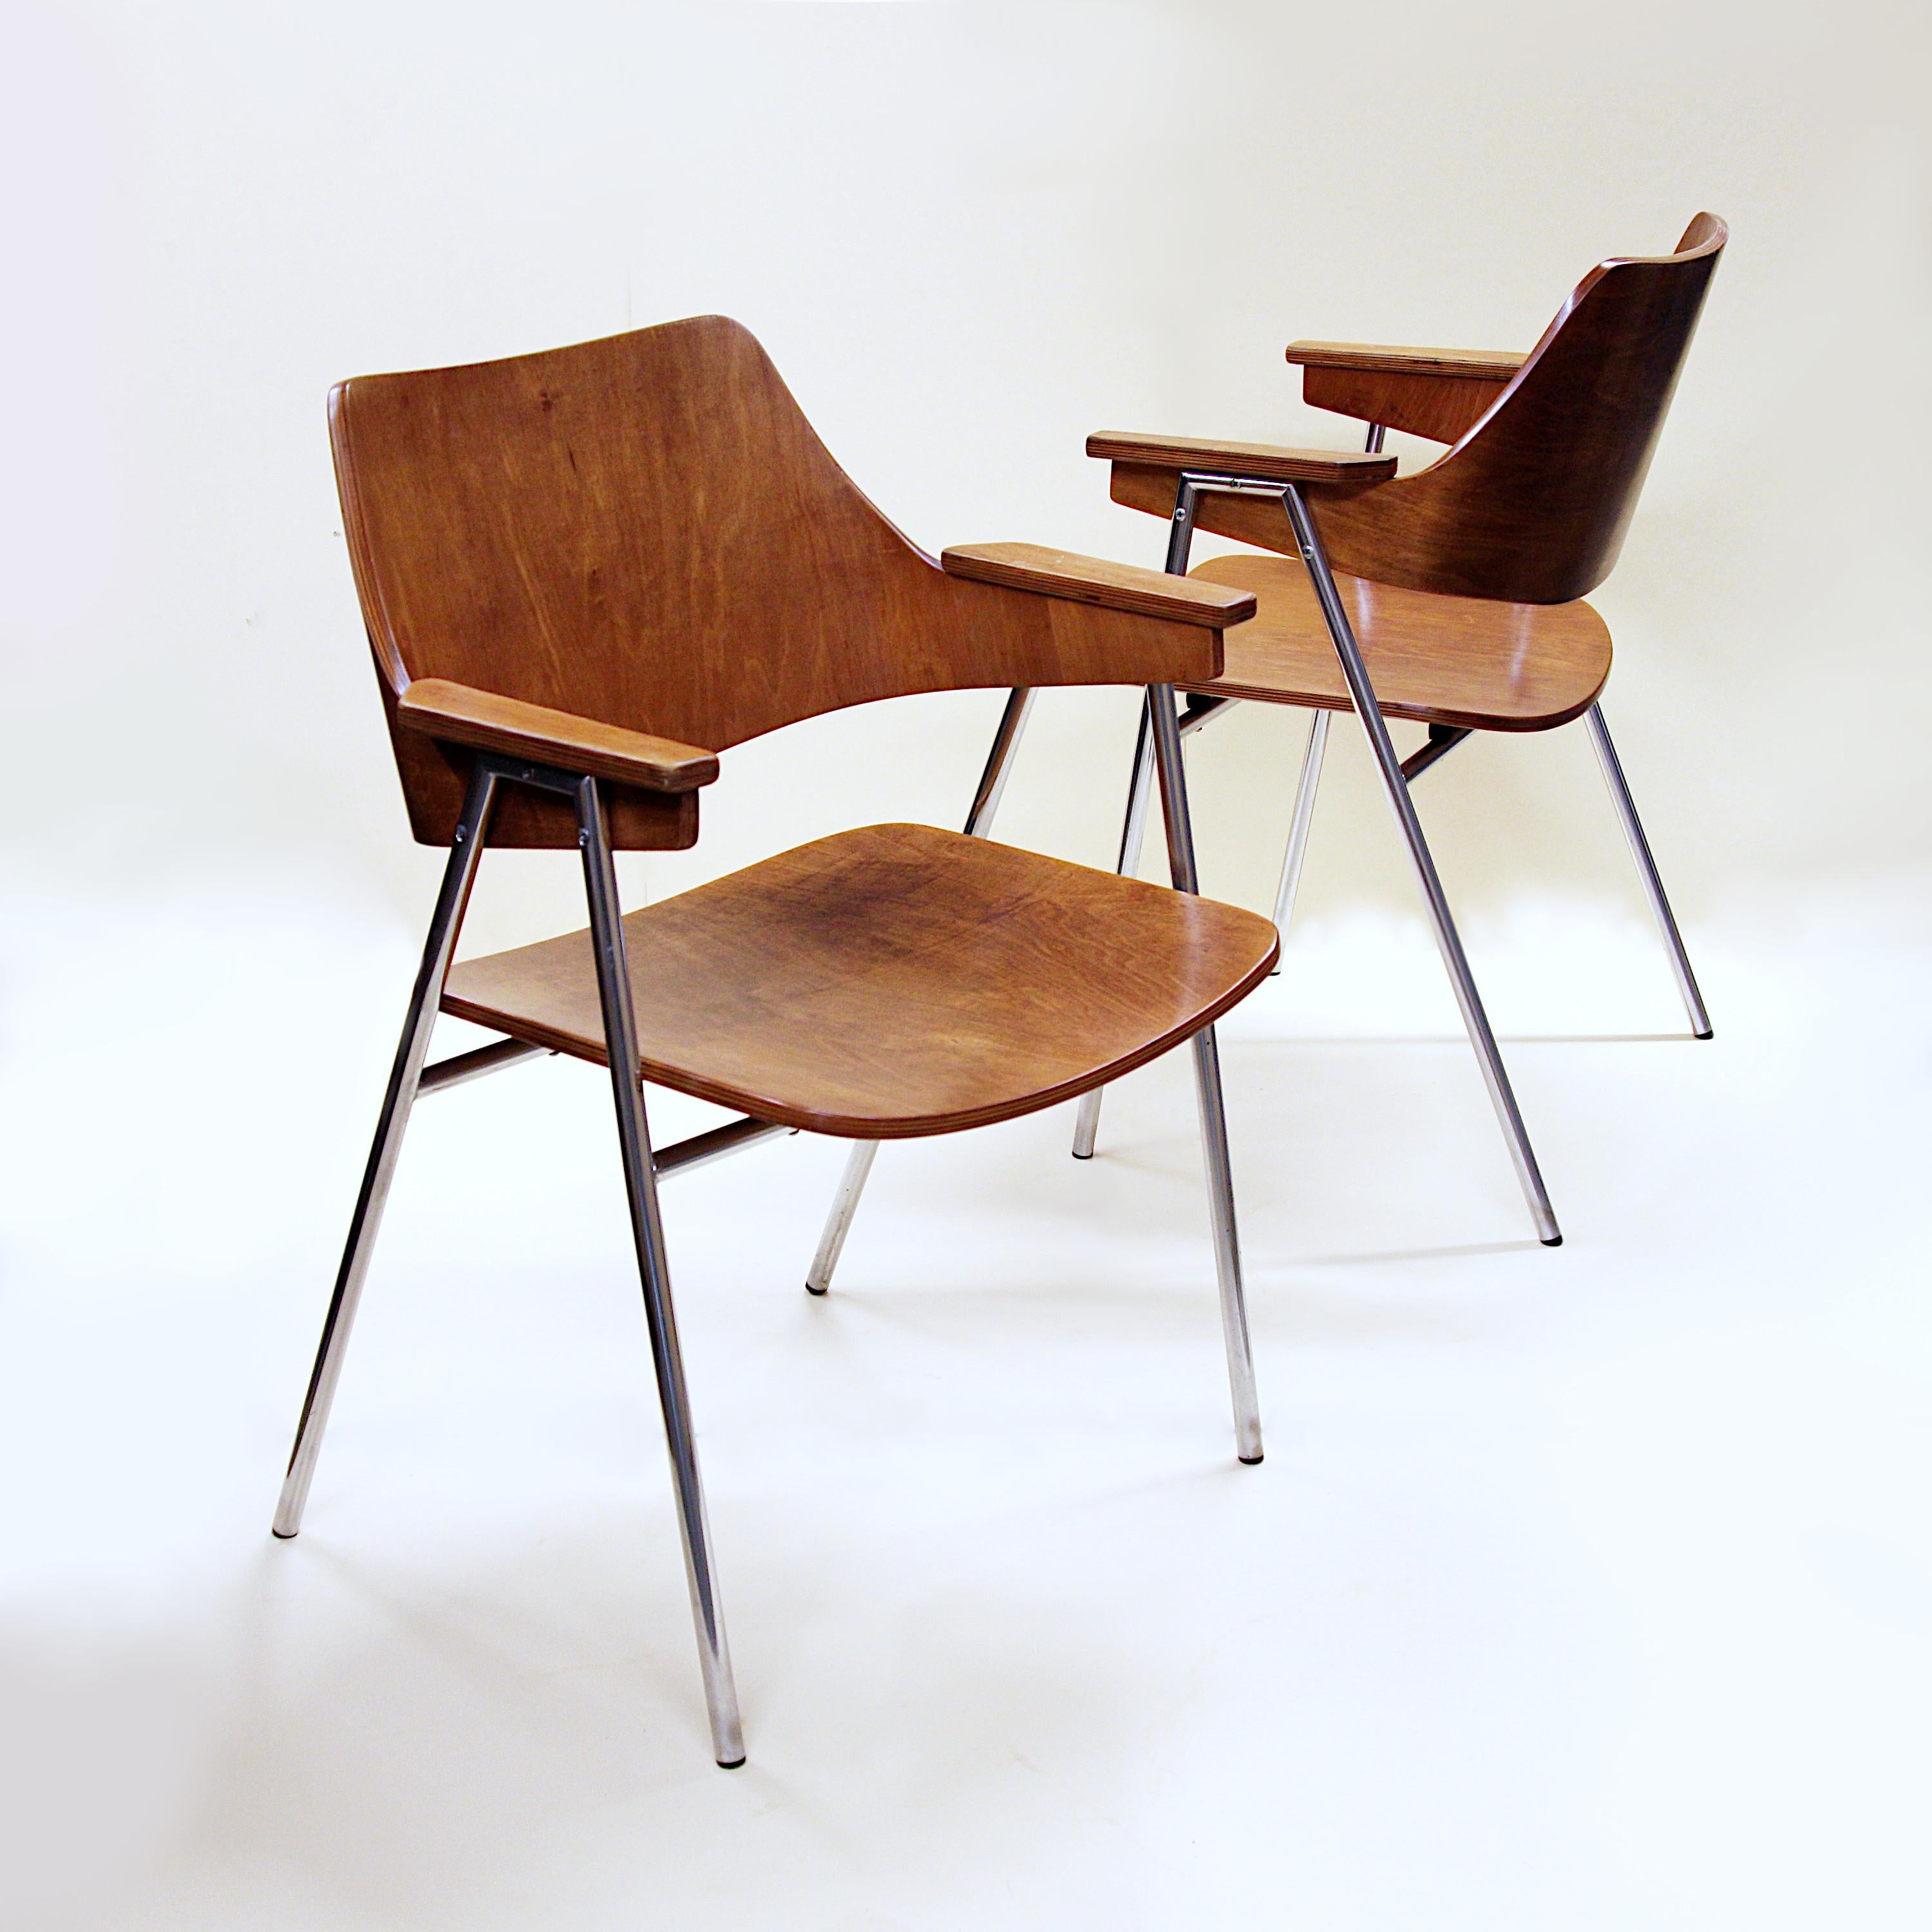 Merveilleuse paire de chaises d'appoint conçues par Hanno Von Gustedt pour Thonet à la fin des années 1950.  Il s'agit essentiellement d'une version rare et précoce du S636 avec des sièges et des dossiers en bois cintré.  De superbes chaises qui